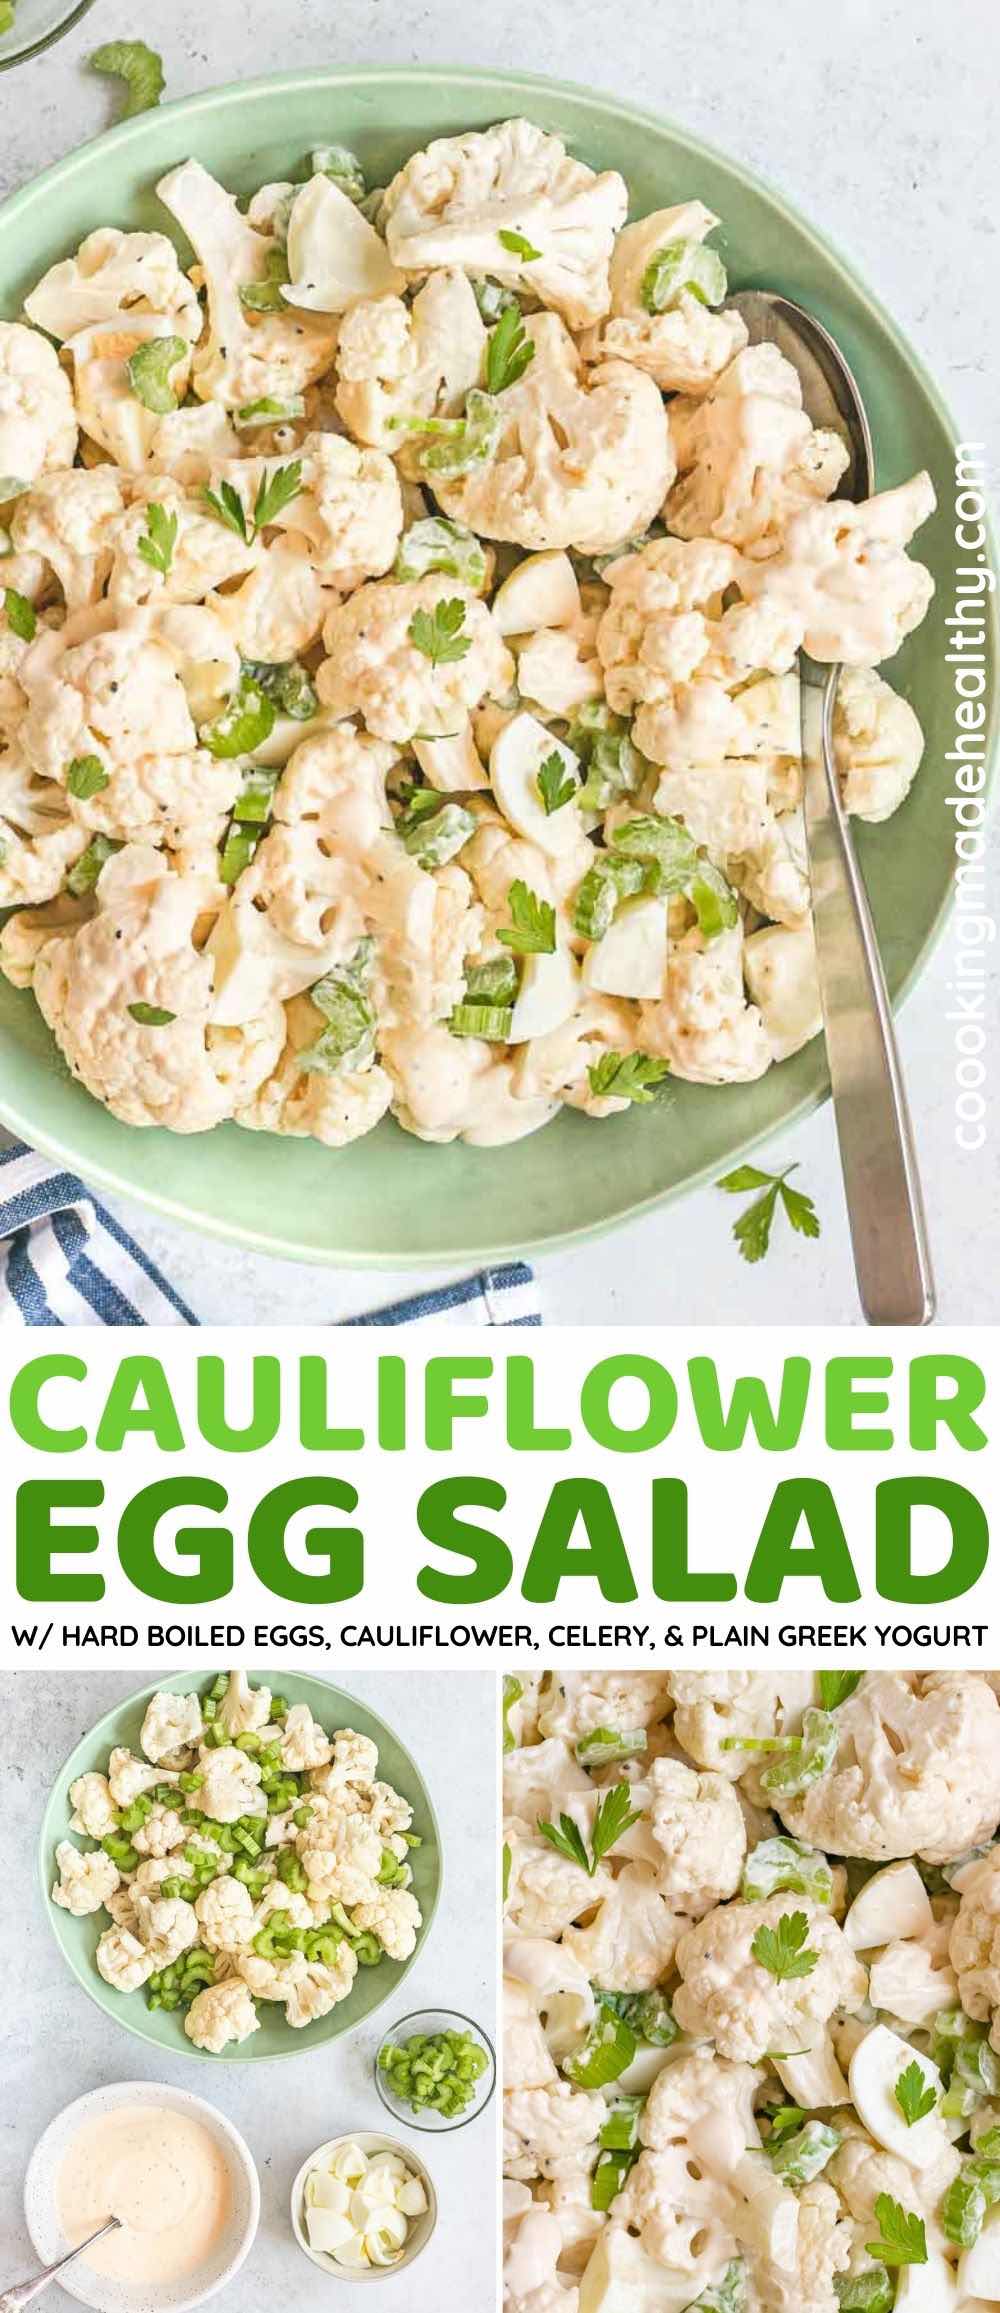 Cauliflower Egg Salad collage